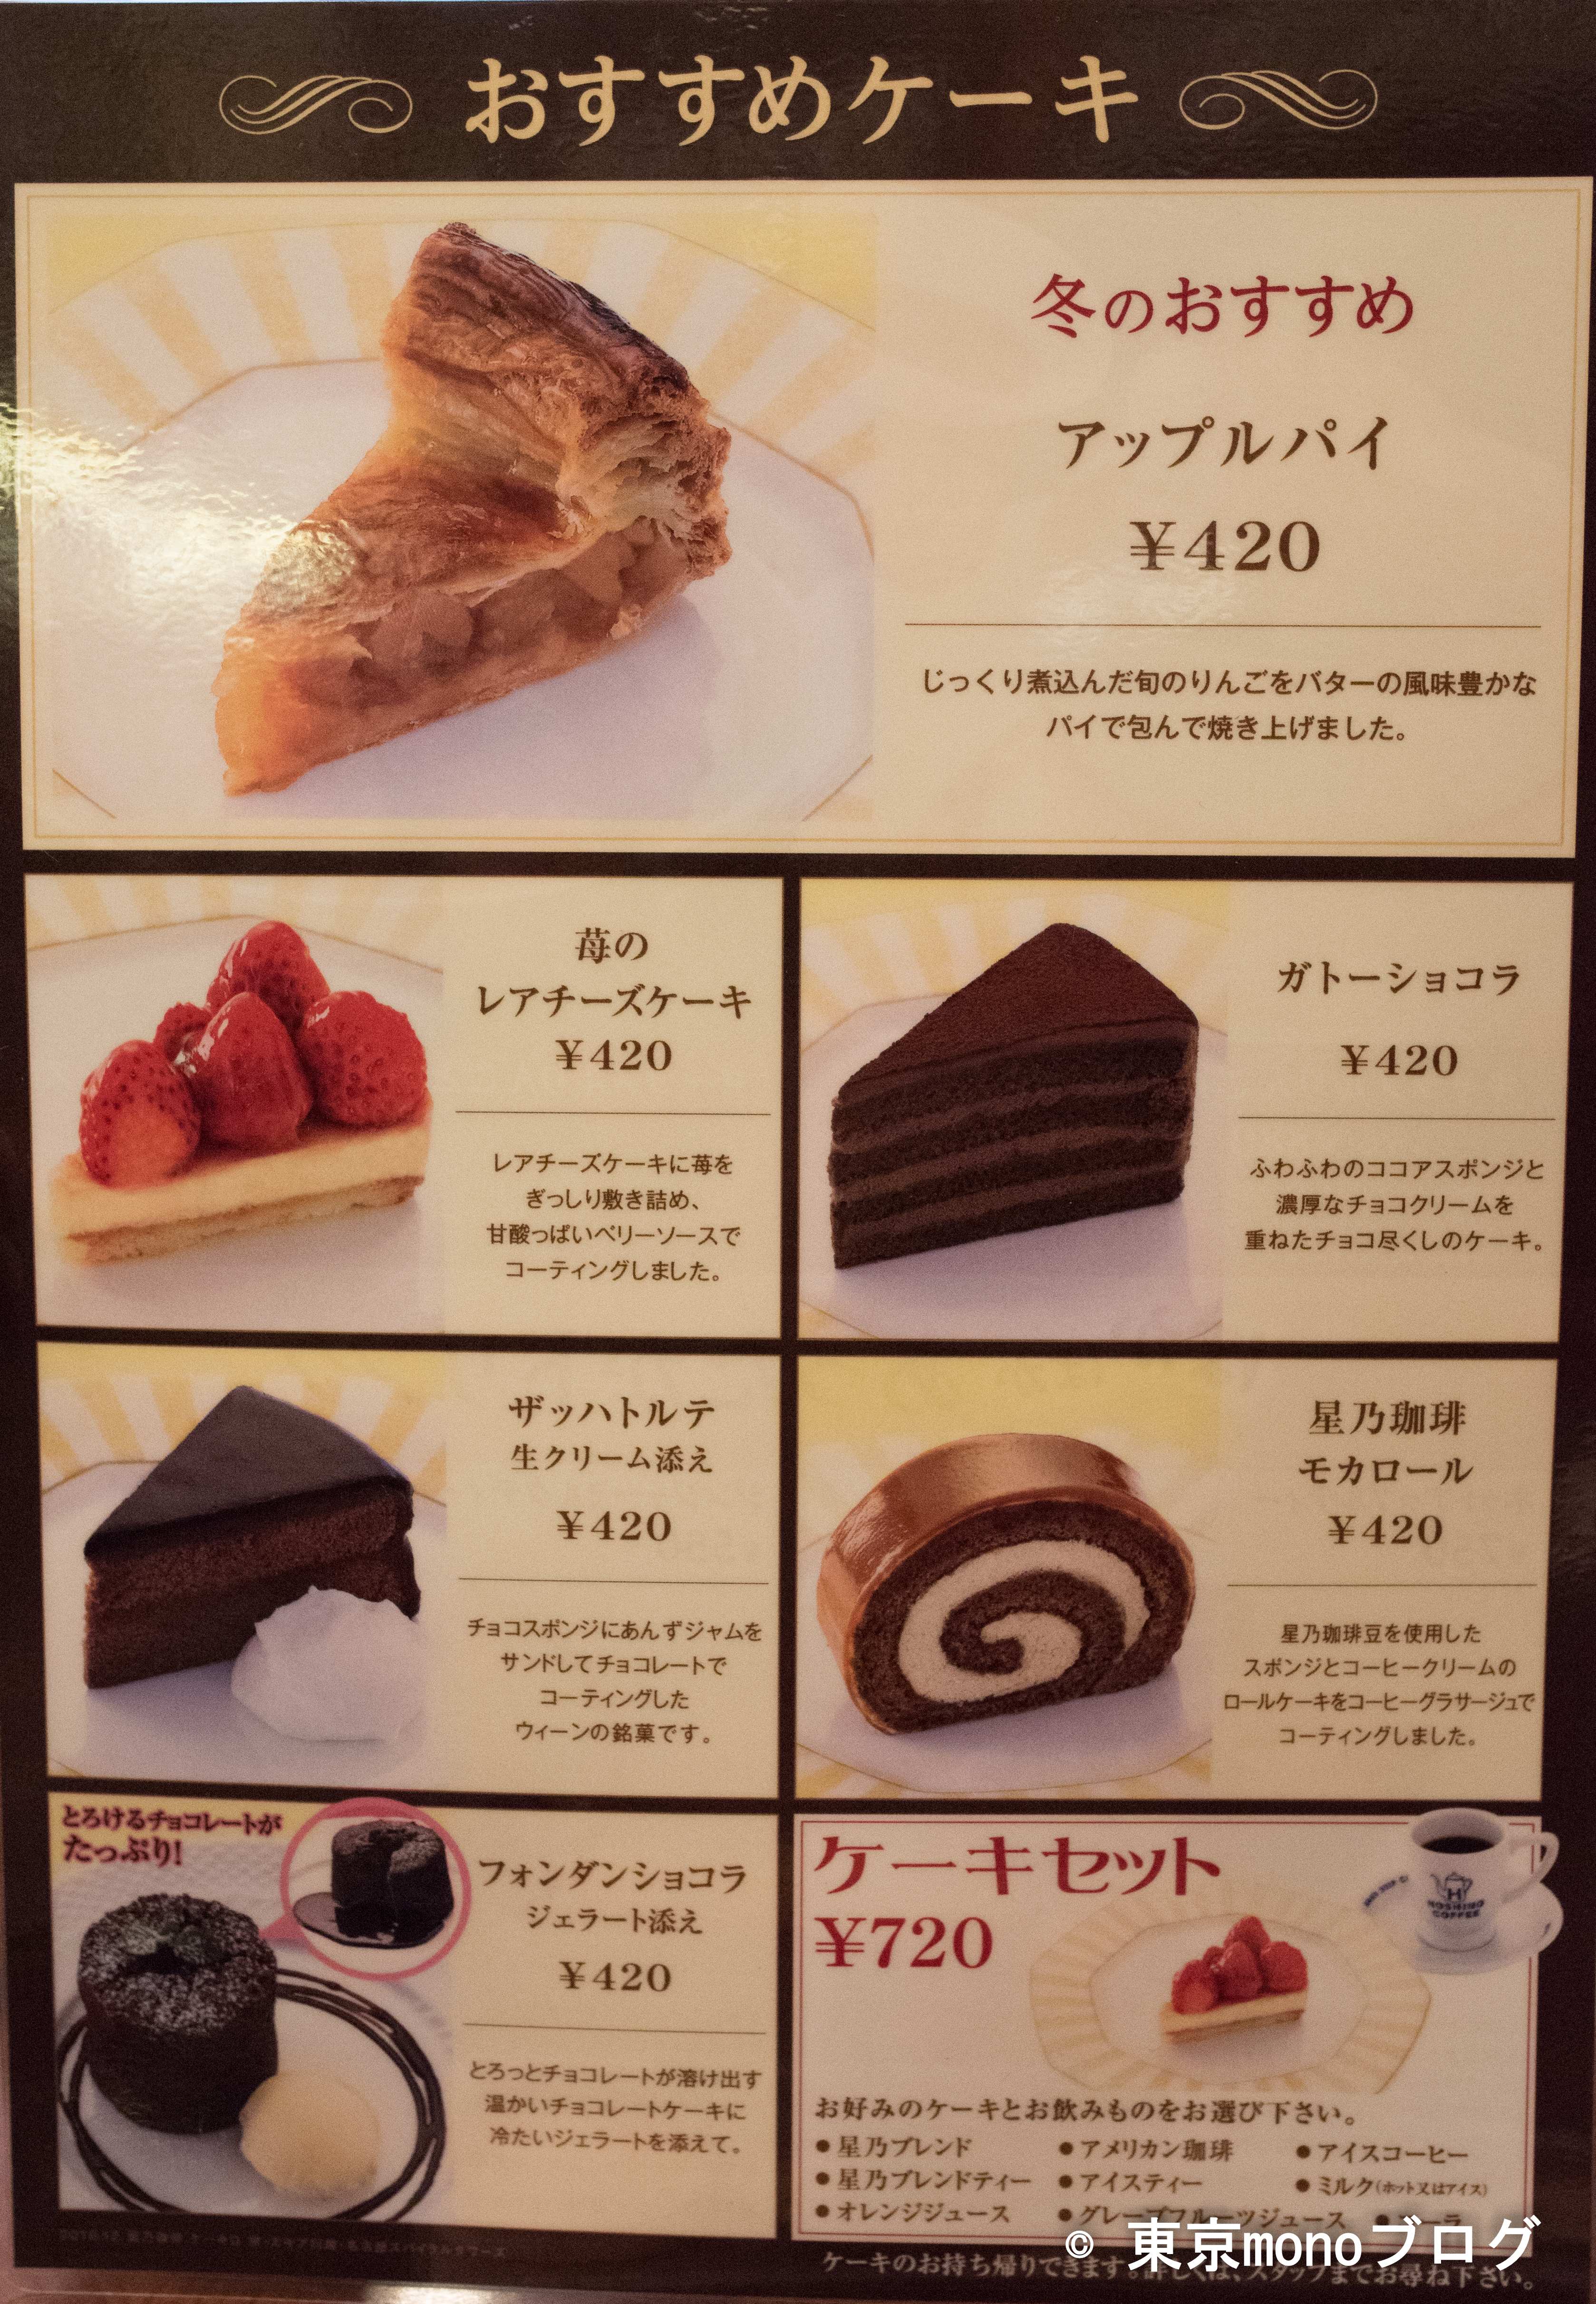 スフレパンケーキが有名な 星乃珈琲店 モーニング時間やメニュー等を紹介 東京monoブログ